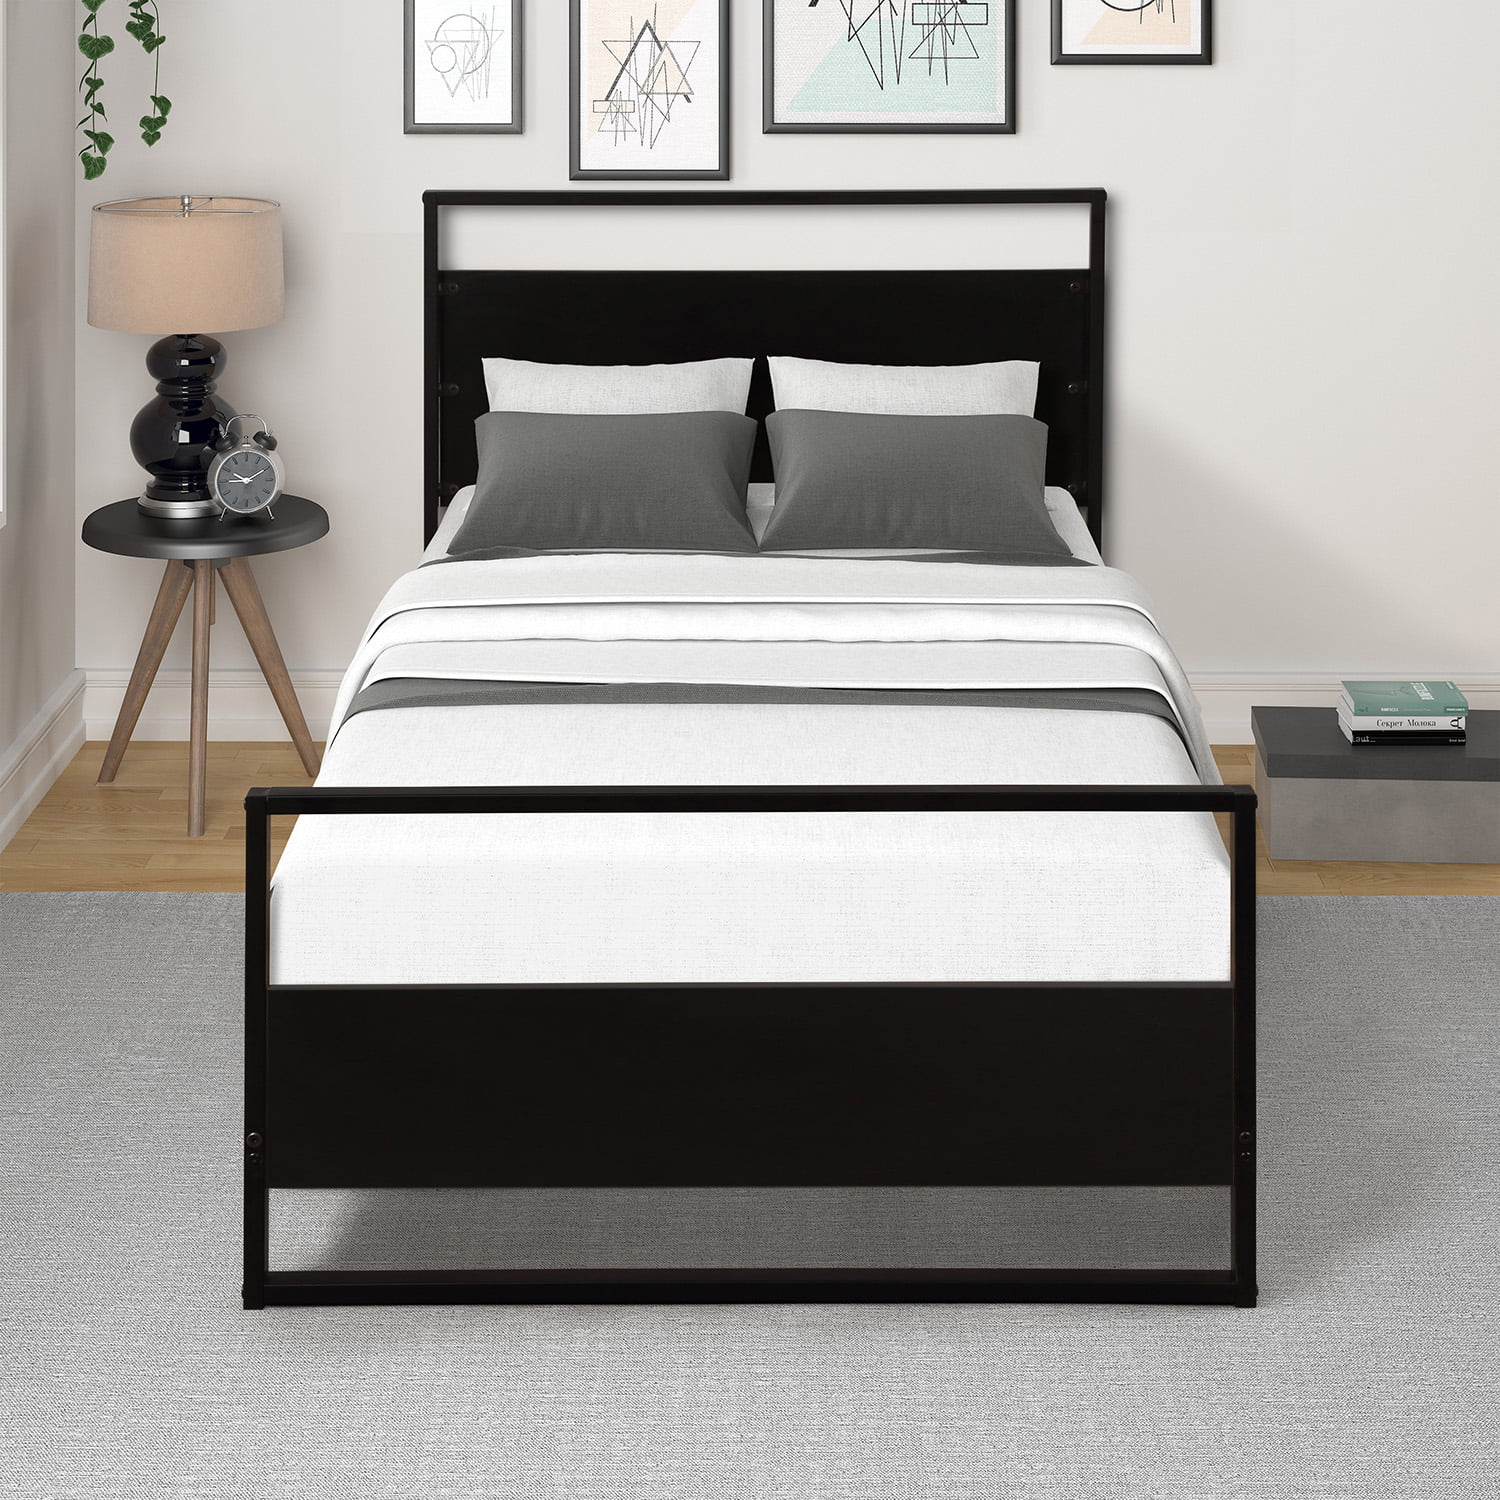 Twin Metal Bed Frame Black, Black Upholstered Twin Bed Frame